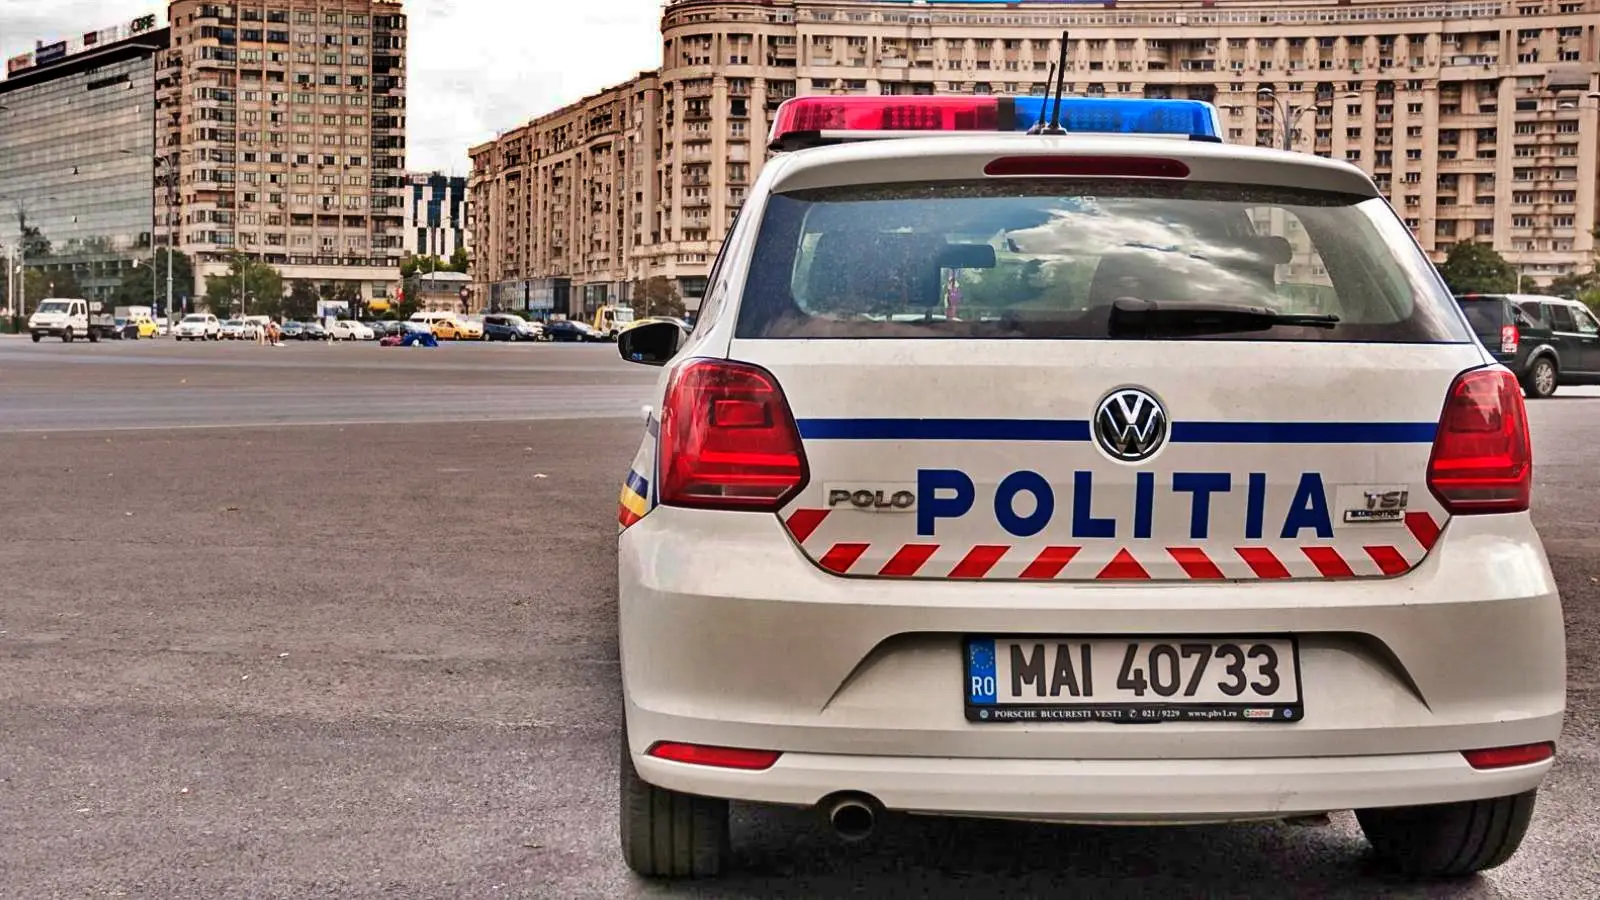 Det rumænske politis advarsel om transporttjenester Rumænien